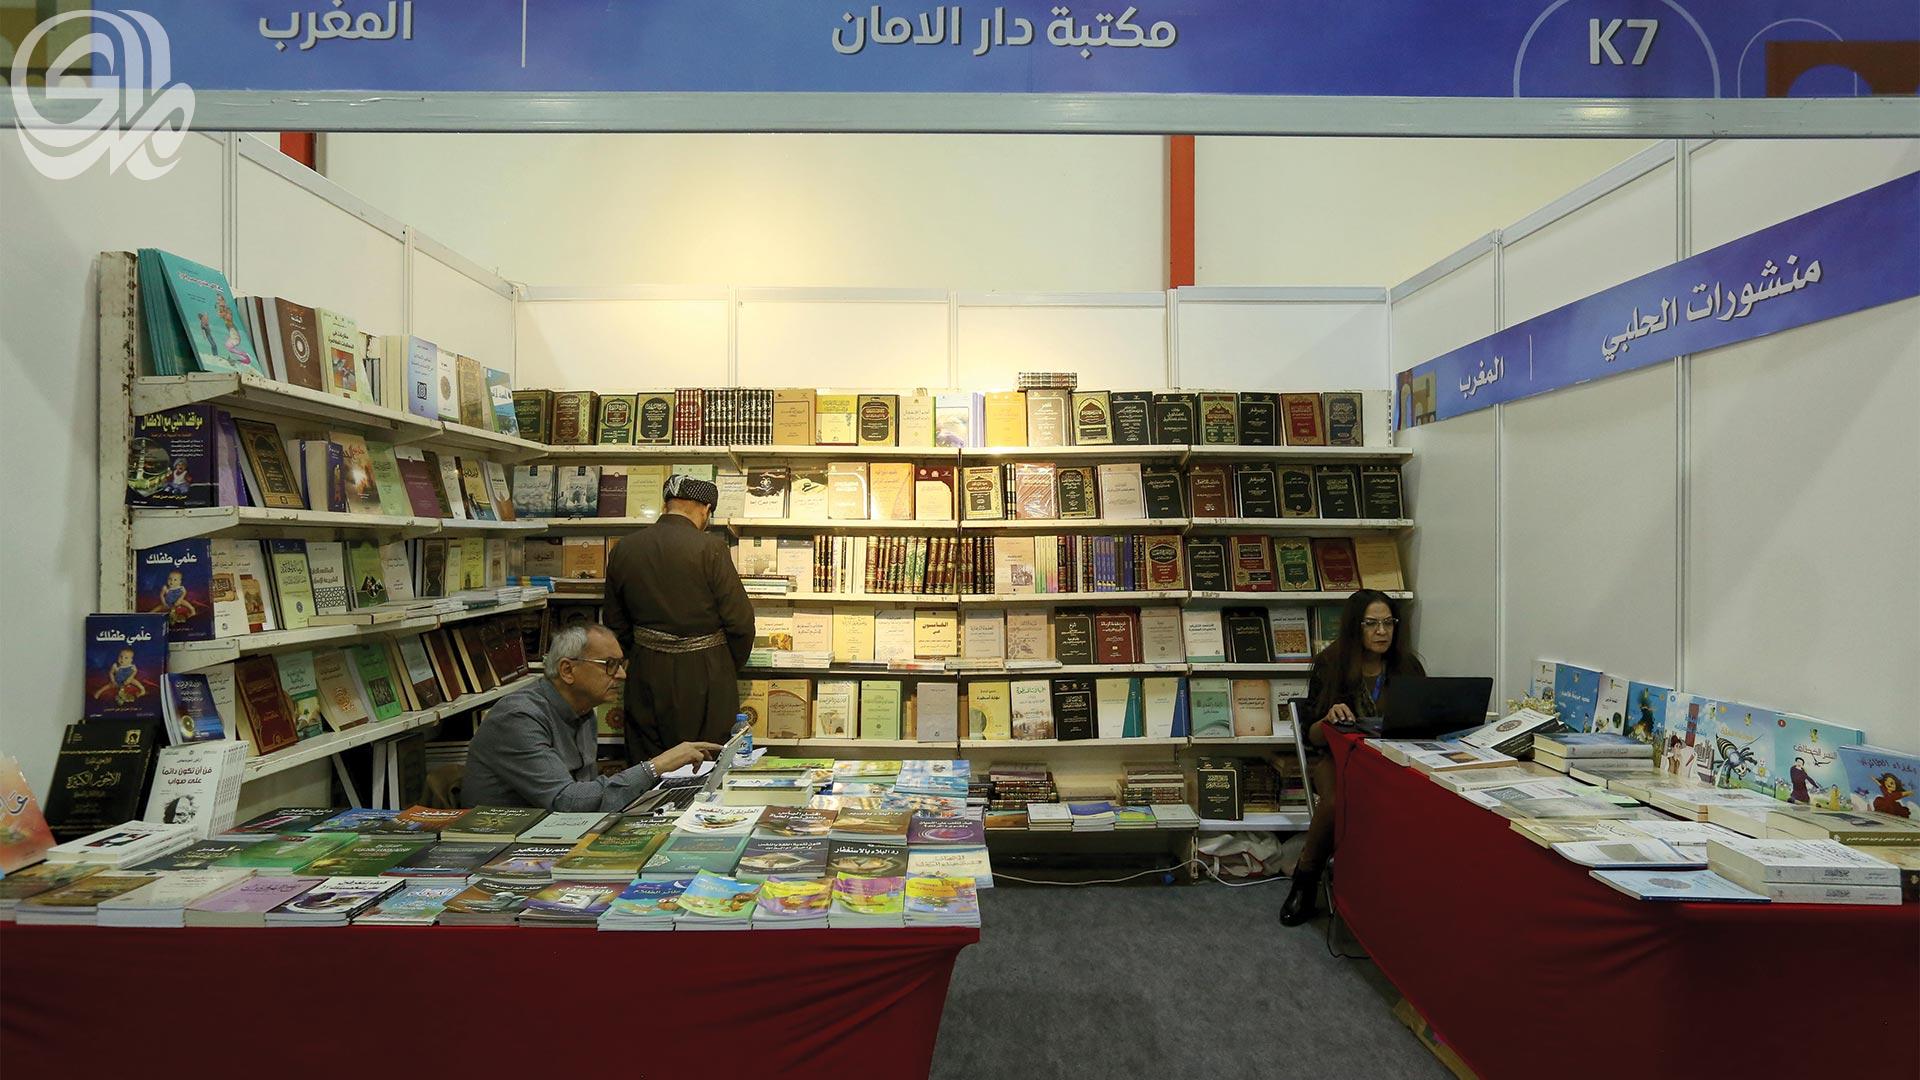 تكاليف نقل الكتب إلى العراق تمنع دور النشر المغربية من المشاركة الواسعة